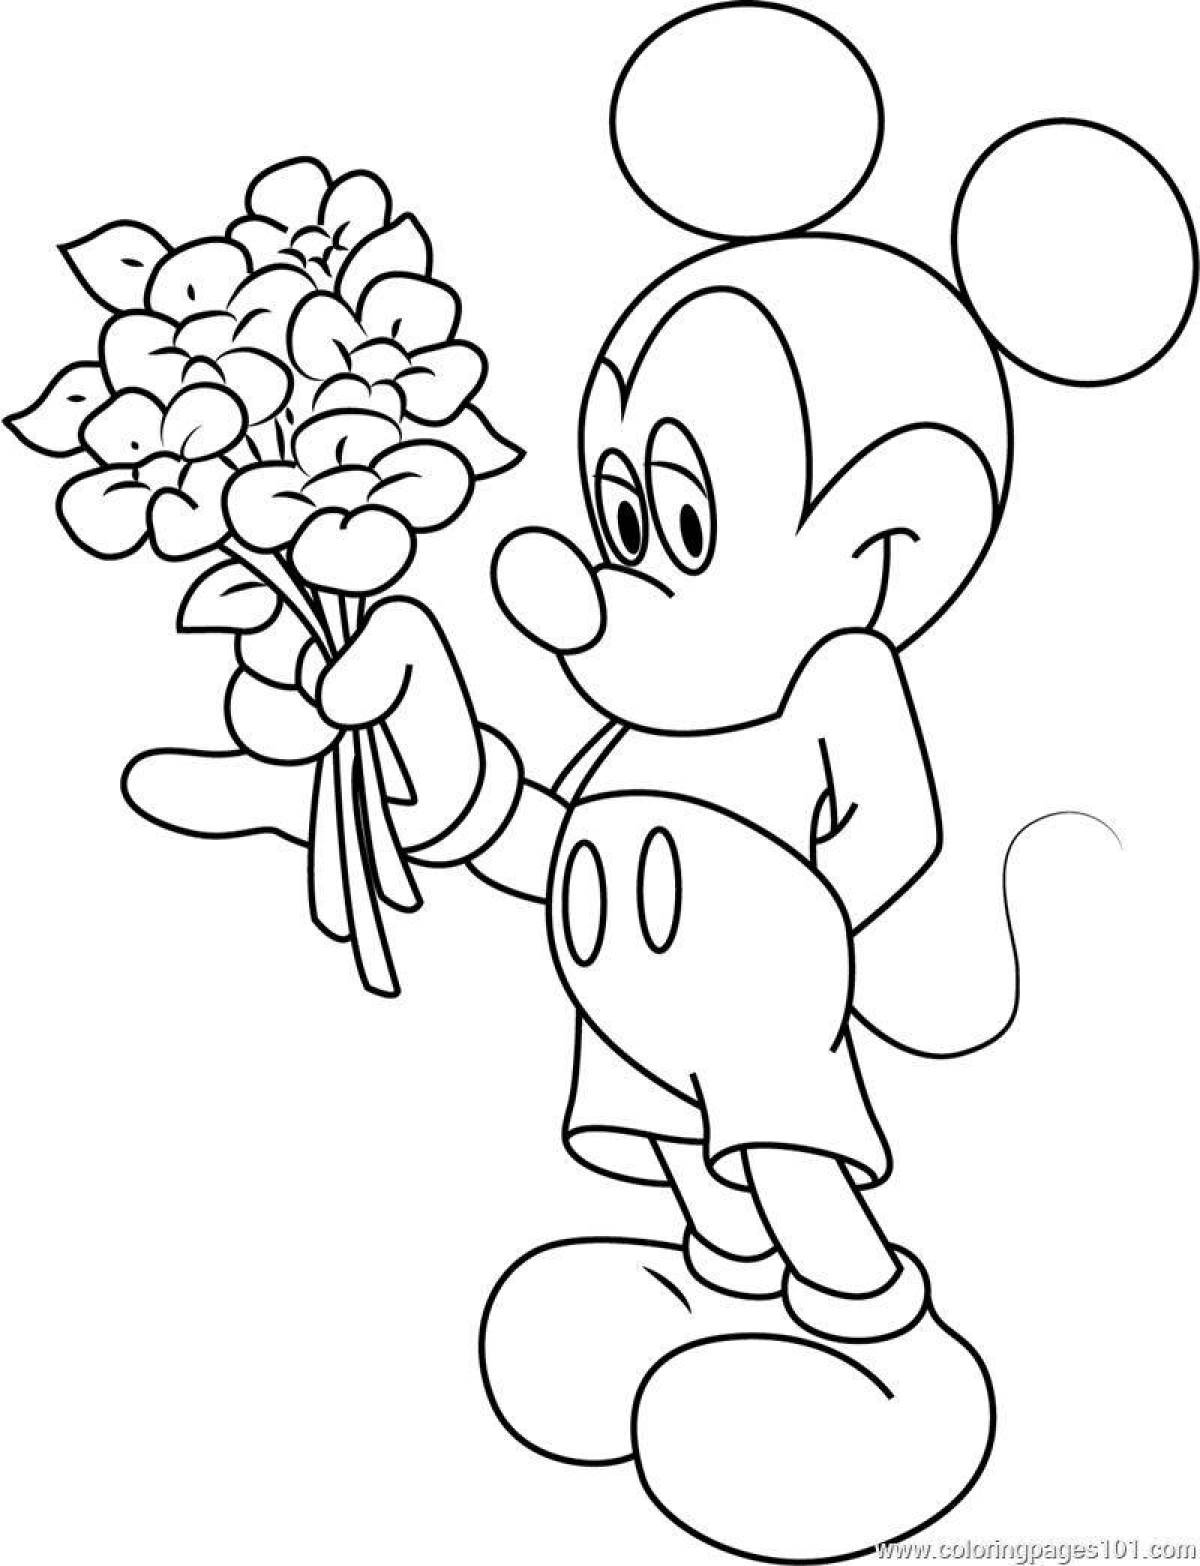 Раскраска Микки Маус с цветами